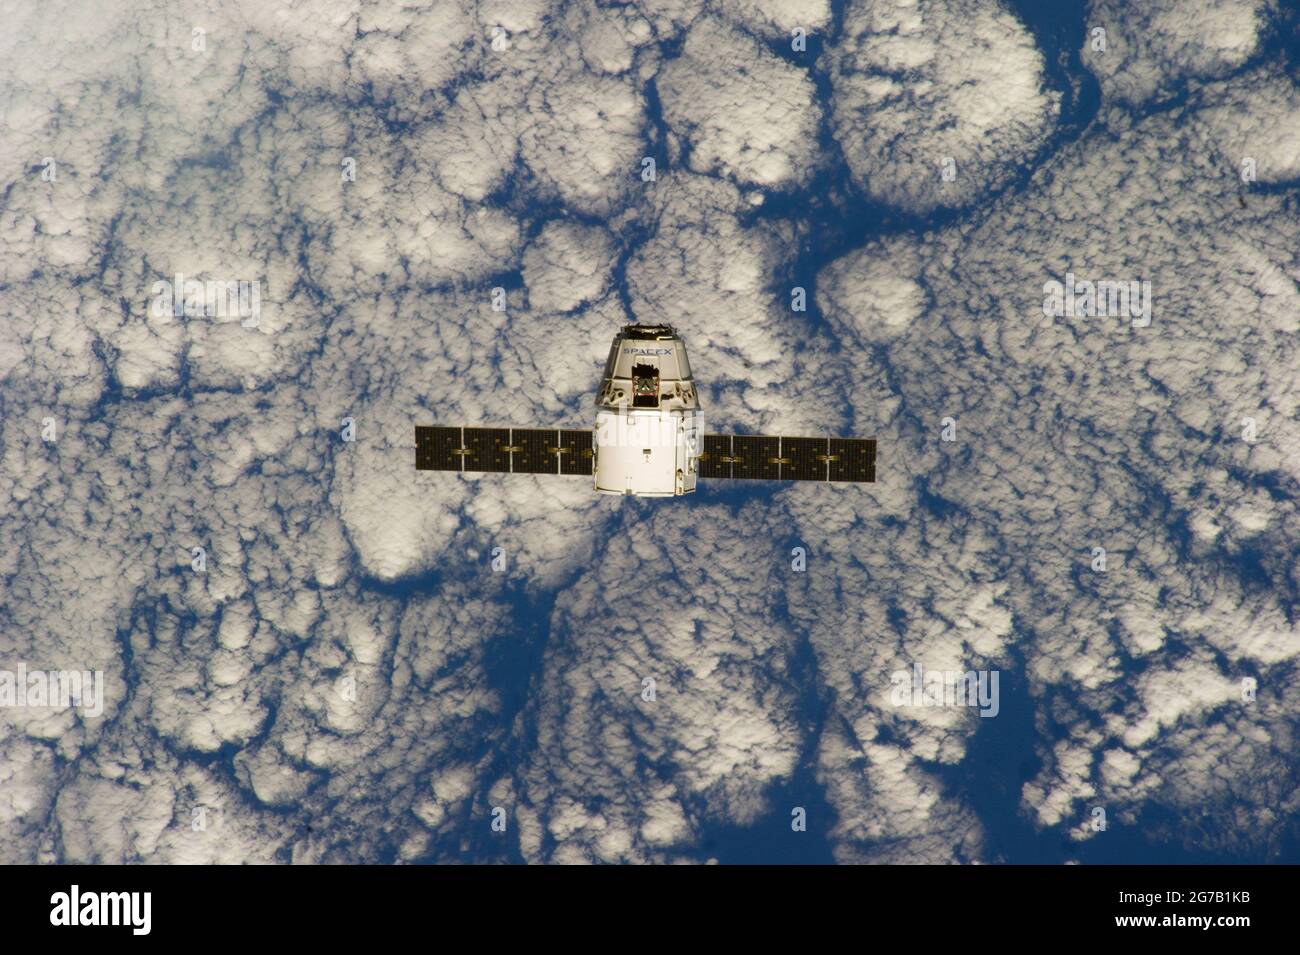 SpaceX CRS-3 Dragon à l'approche de la Station spatiale internationale (ISS). Photographié par les membres de l'équipage de l'expédition 39 à bord de l'avant-poste orbital. L'engin spatial a été capturé par la station spatiale et a été amarré avec succès, après l'arrivée du 30 avril 2014. Une version optimisée et améliorée d'une NASA image / crédit NASA Banque D'Images